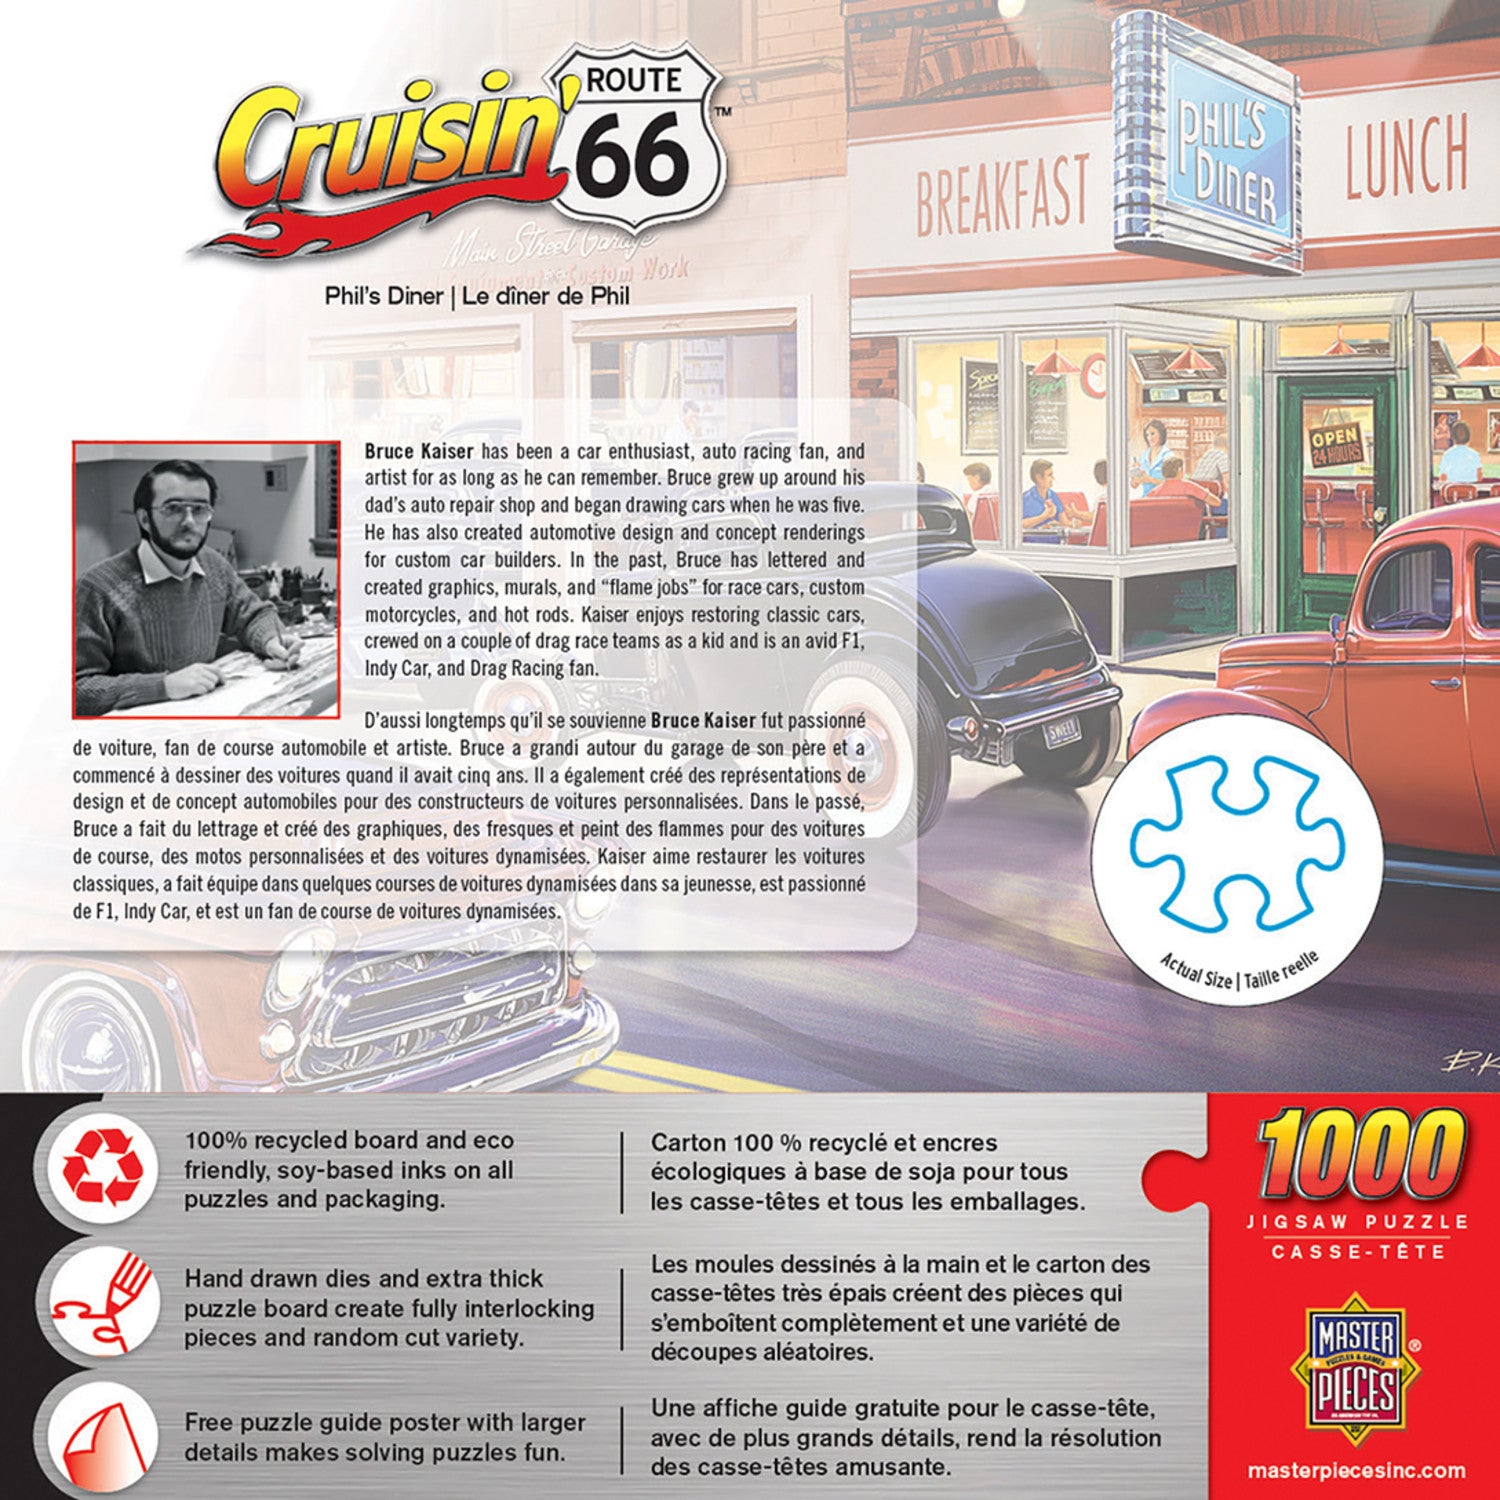 Cruisin' Route 66 - Phil's Diner 1000 Piece Puzzle